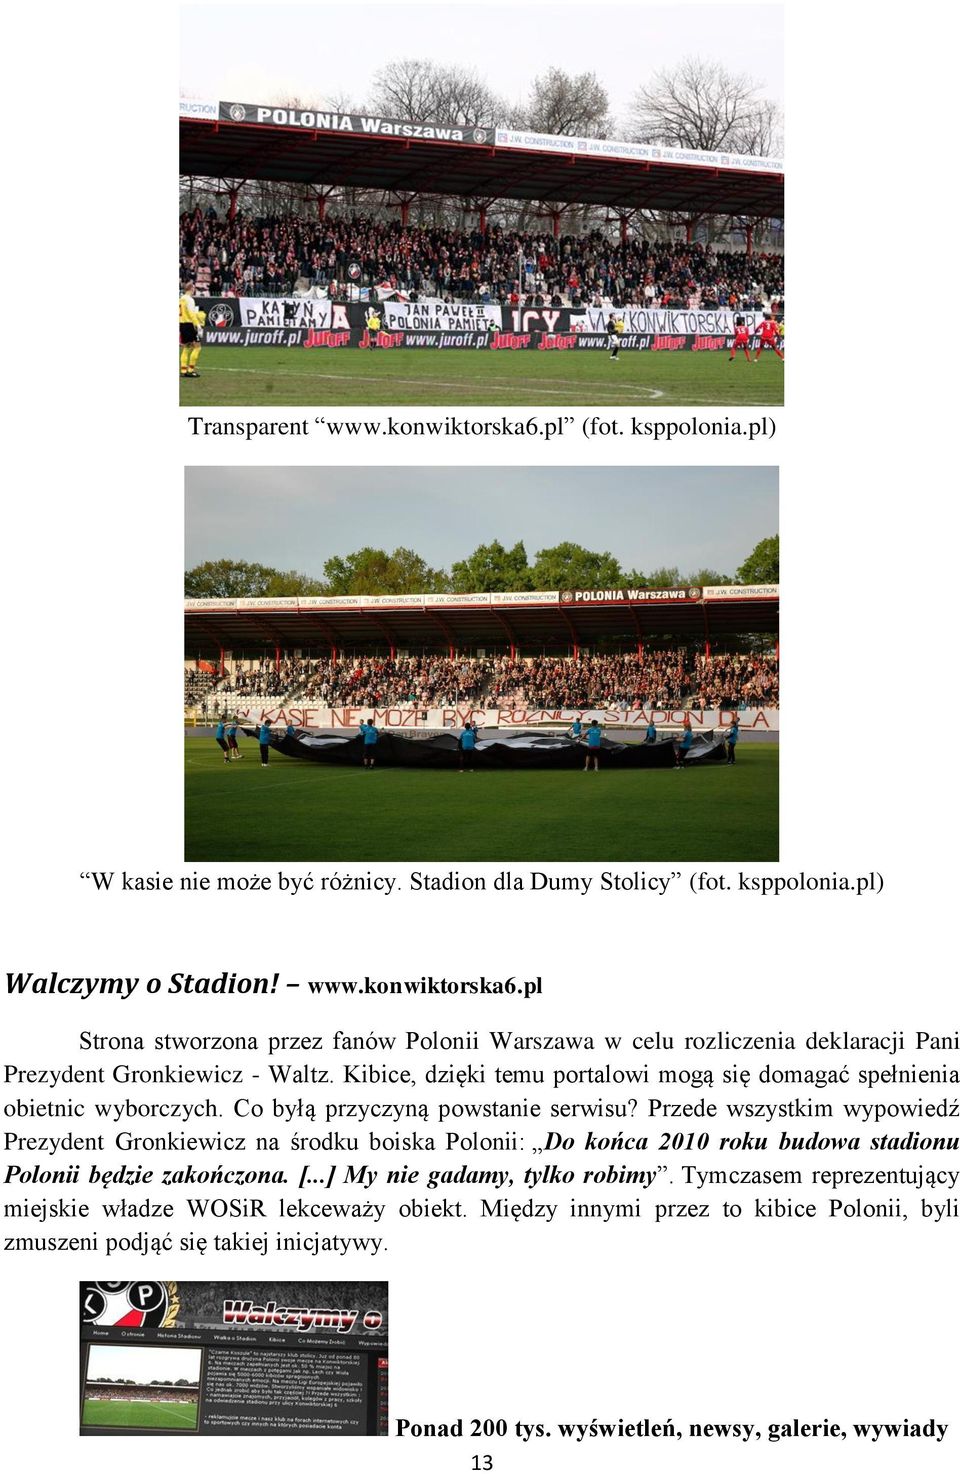 Przede wszystkim wypowiedź Prezydent Gronkiewicz na środku boiska Polonii: Do końca 2010 roku budowa stadionu Polonii będzie zakończona. [...] My nie gadamy, tylko robimy.